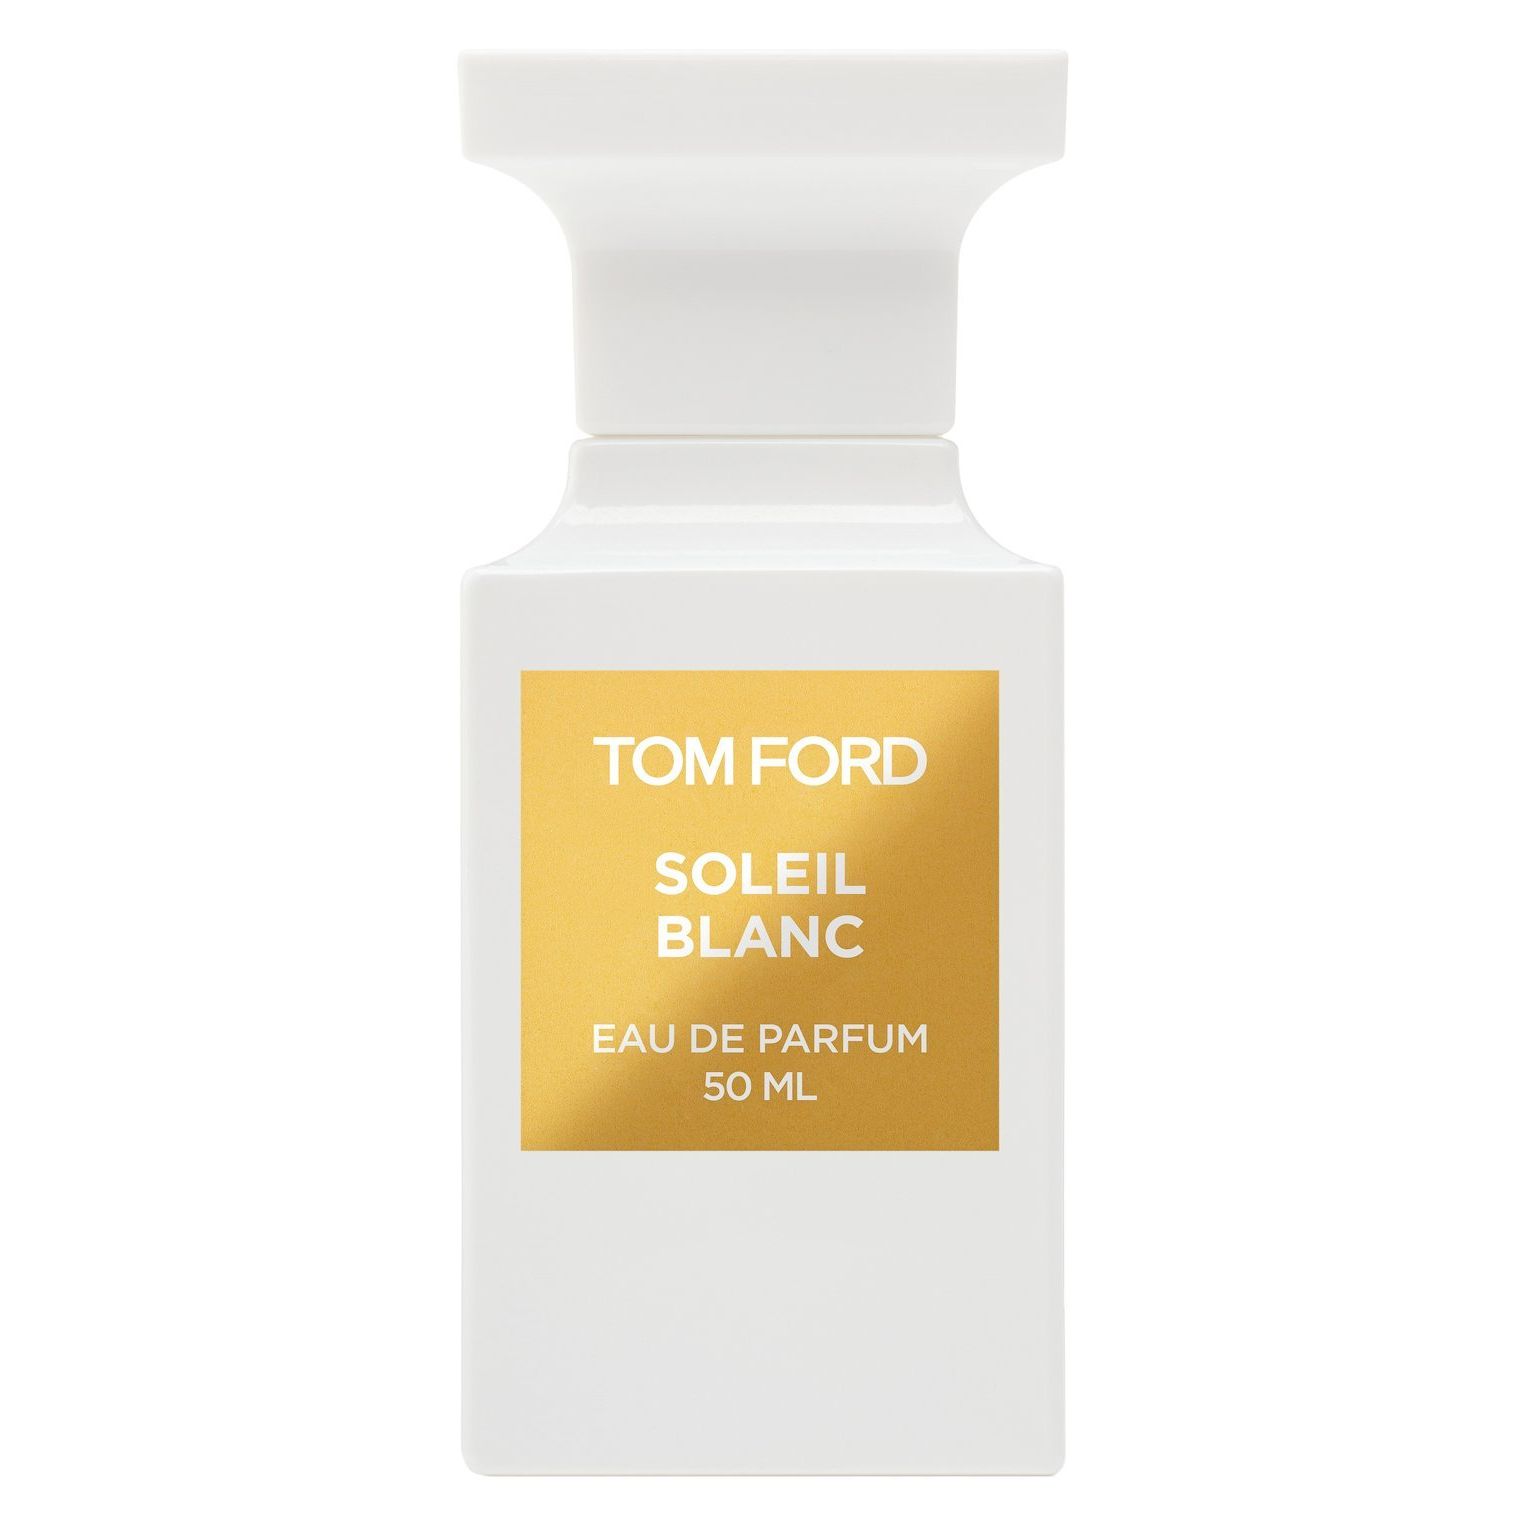 Вода парфюмерная Tom Ford Soleil Blanc, унисекс, 50 мл tom ford soleil blanс 30